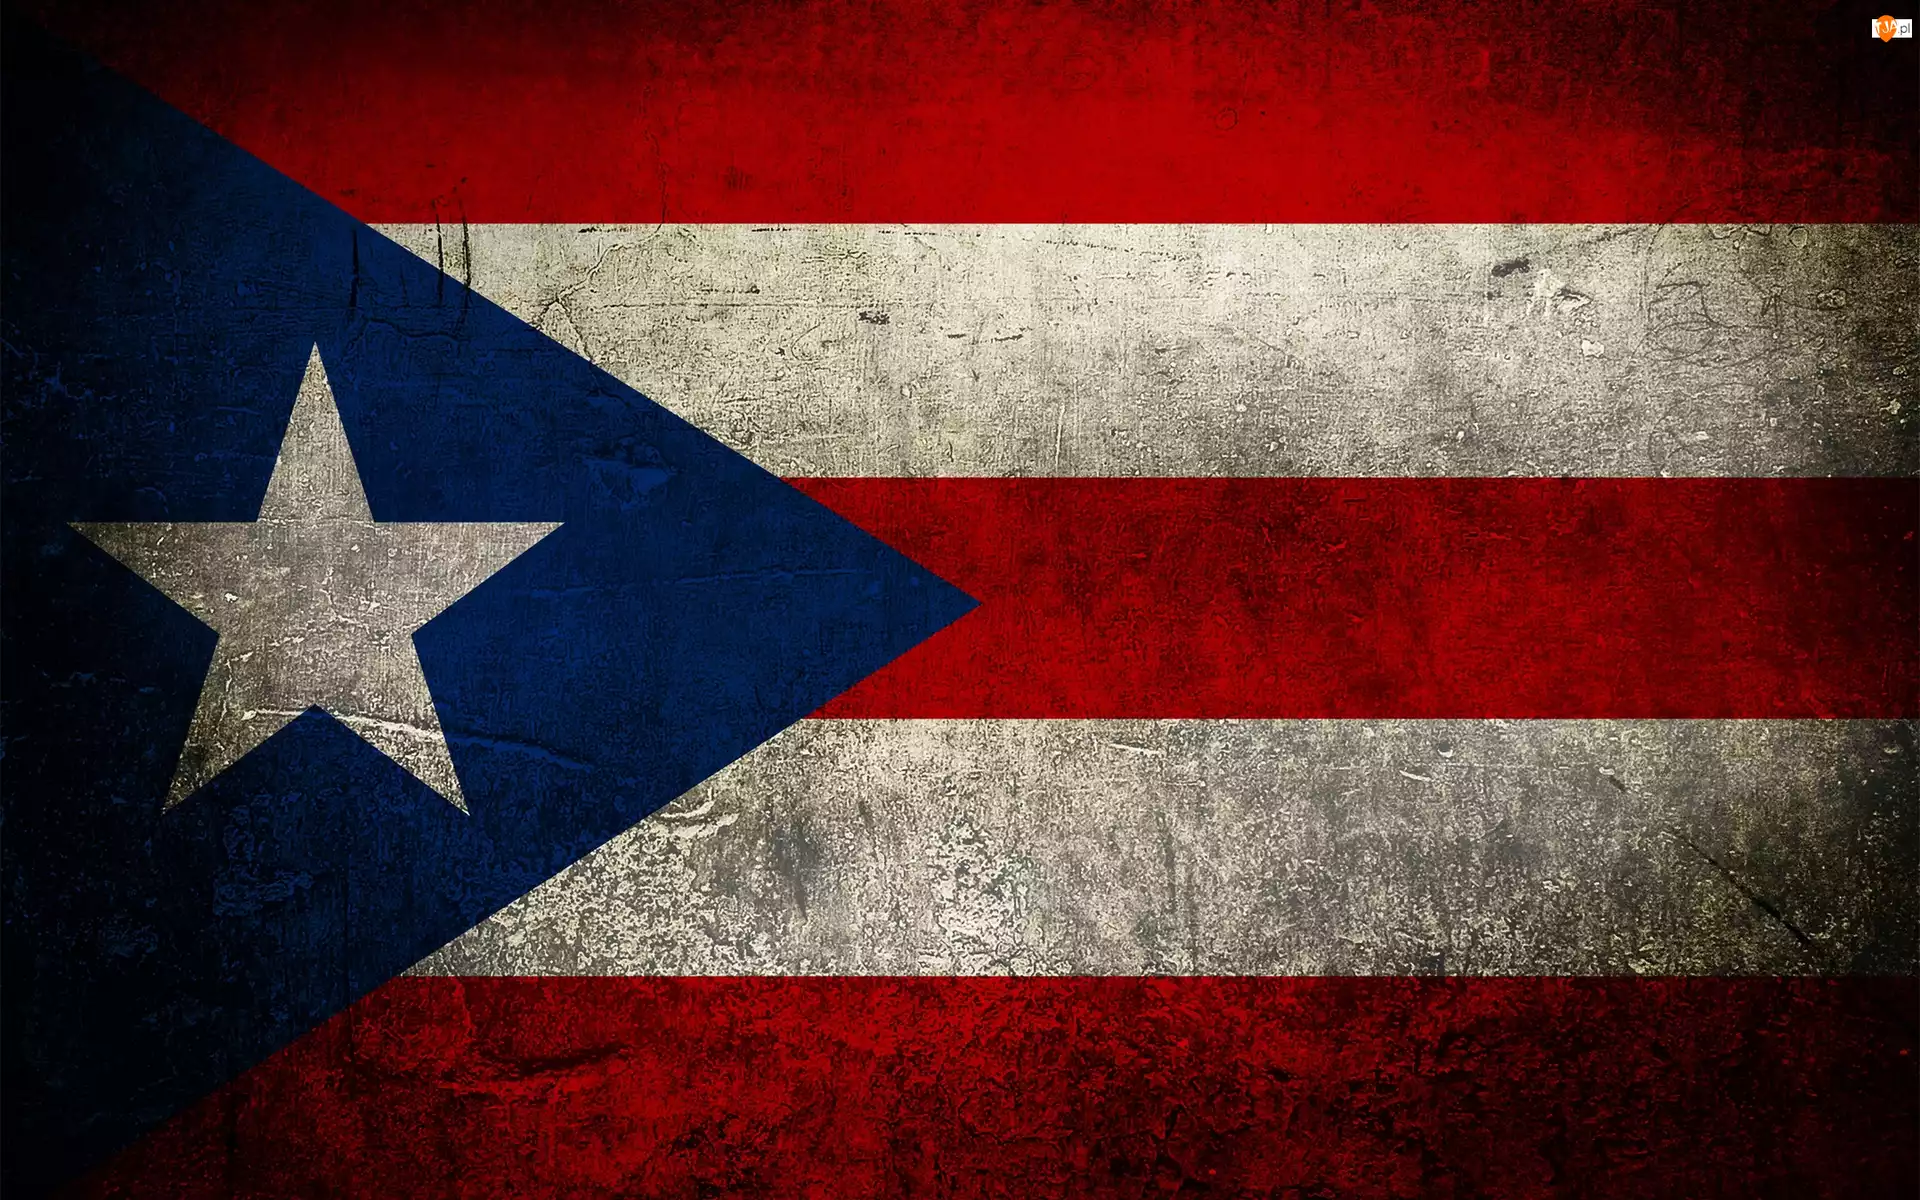 Flaga, Puerto Rico